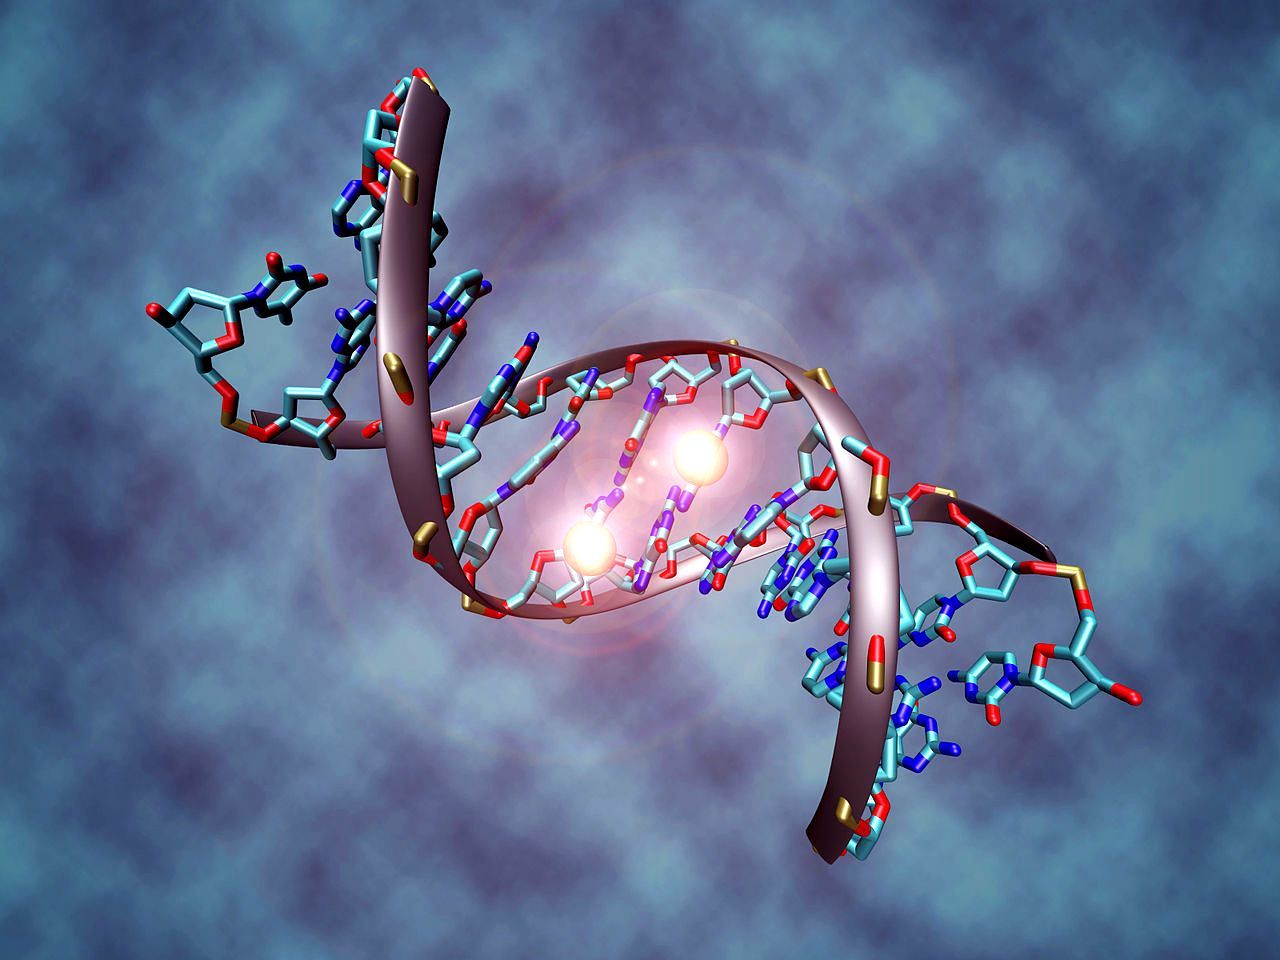 26 უცნაური ფაქტი დნმ-სა და გენების შესახებ, რომელიც არასდროს გსმენიათ 4-ის შესახებ